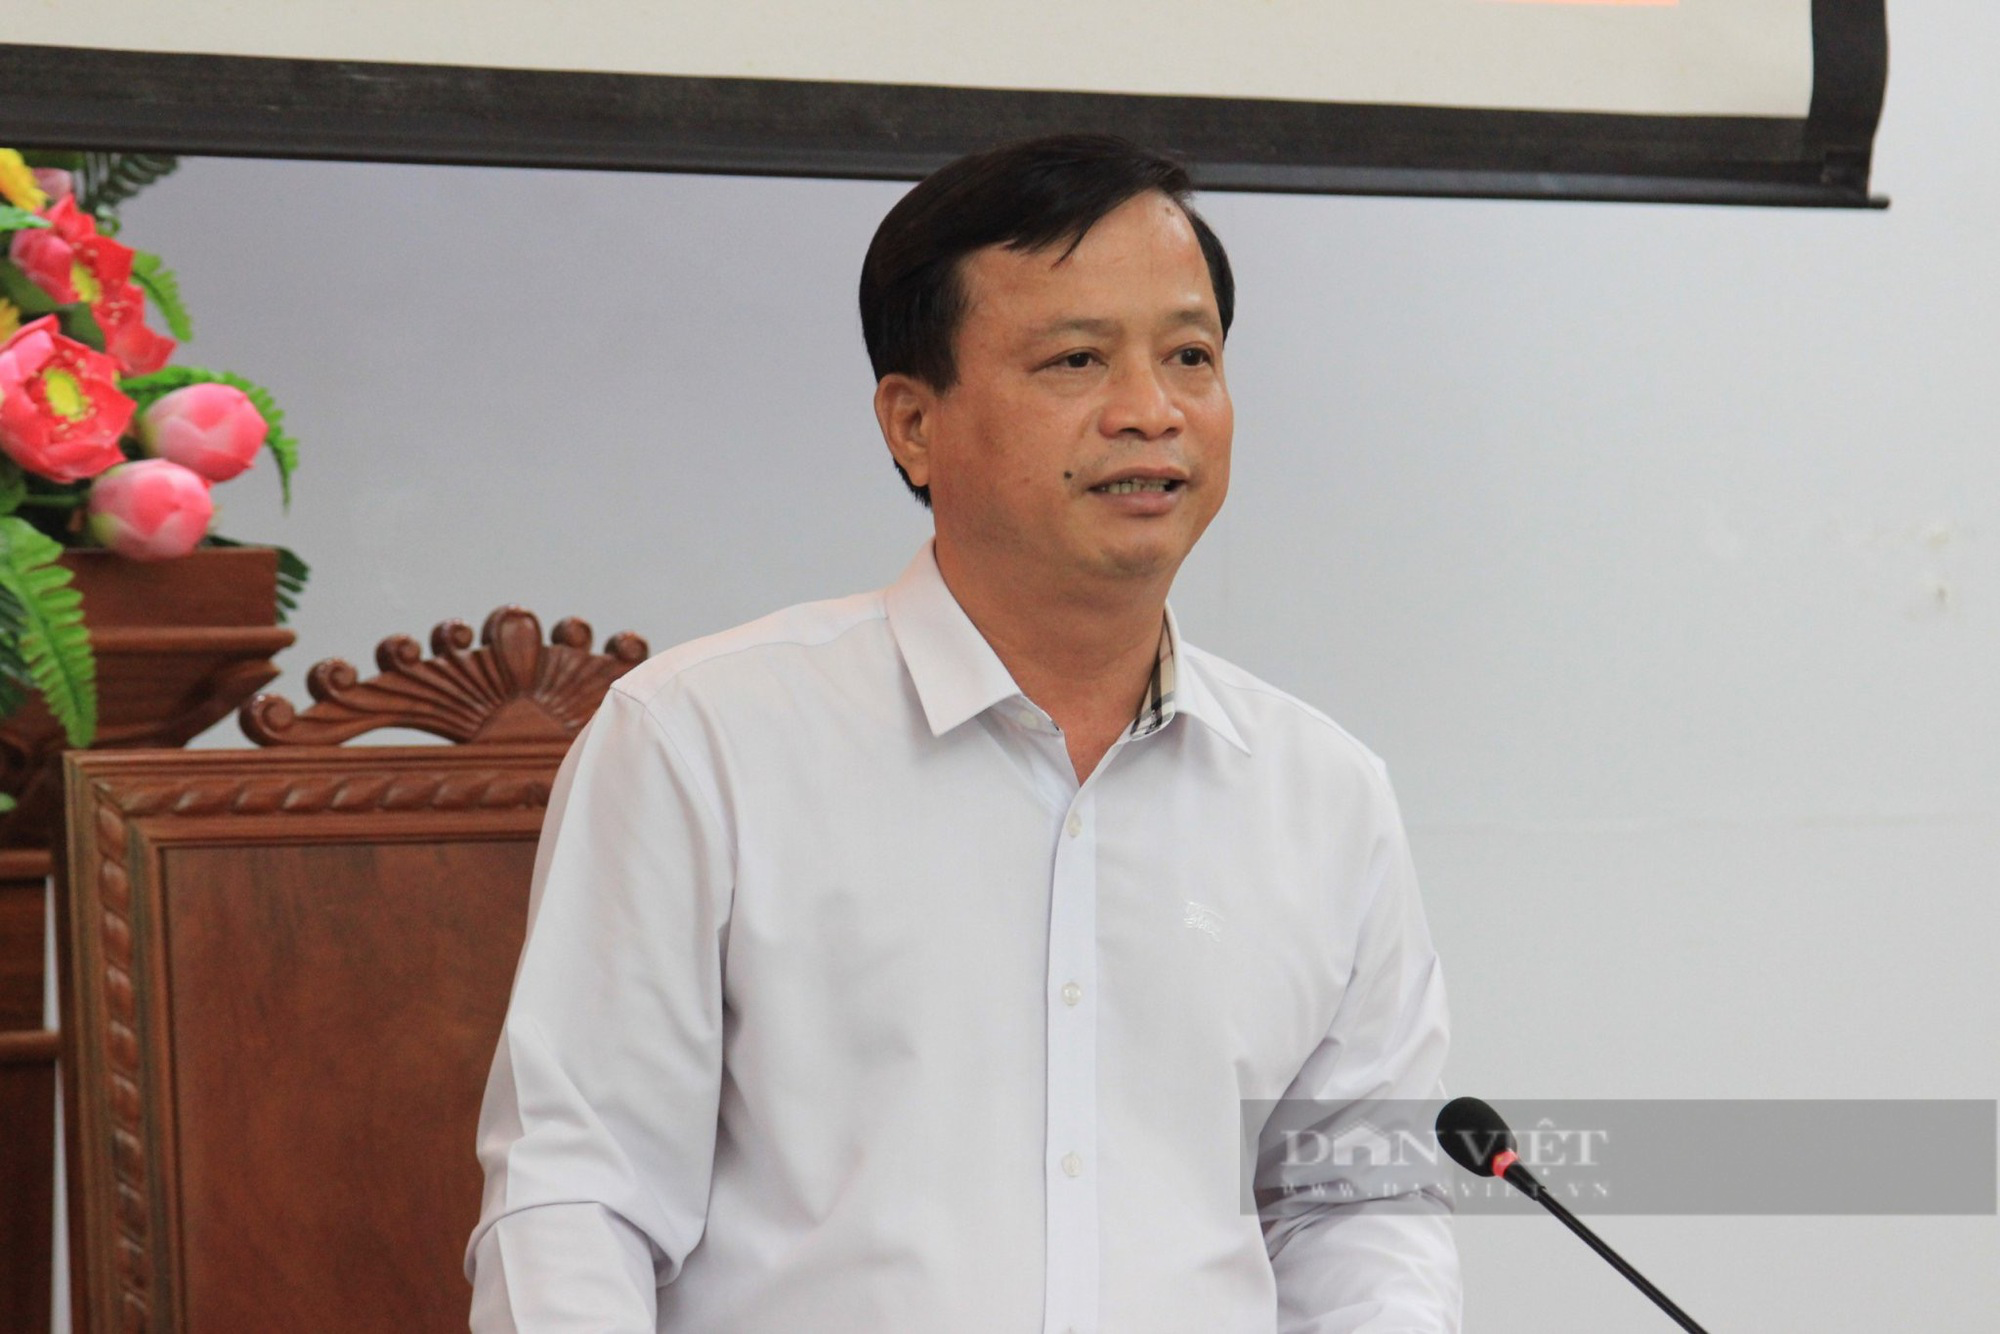 Một huyện xảy ra ba vụ phá rừng, Phó Chủ tịch tỉnh Bình Định: 'Quản lý rừng phòng hộ lỏng lẻo' - Ảnh 1.